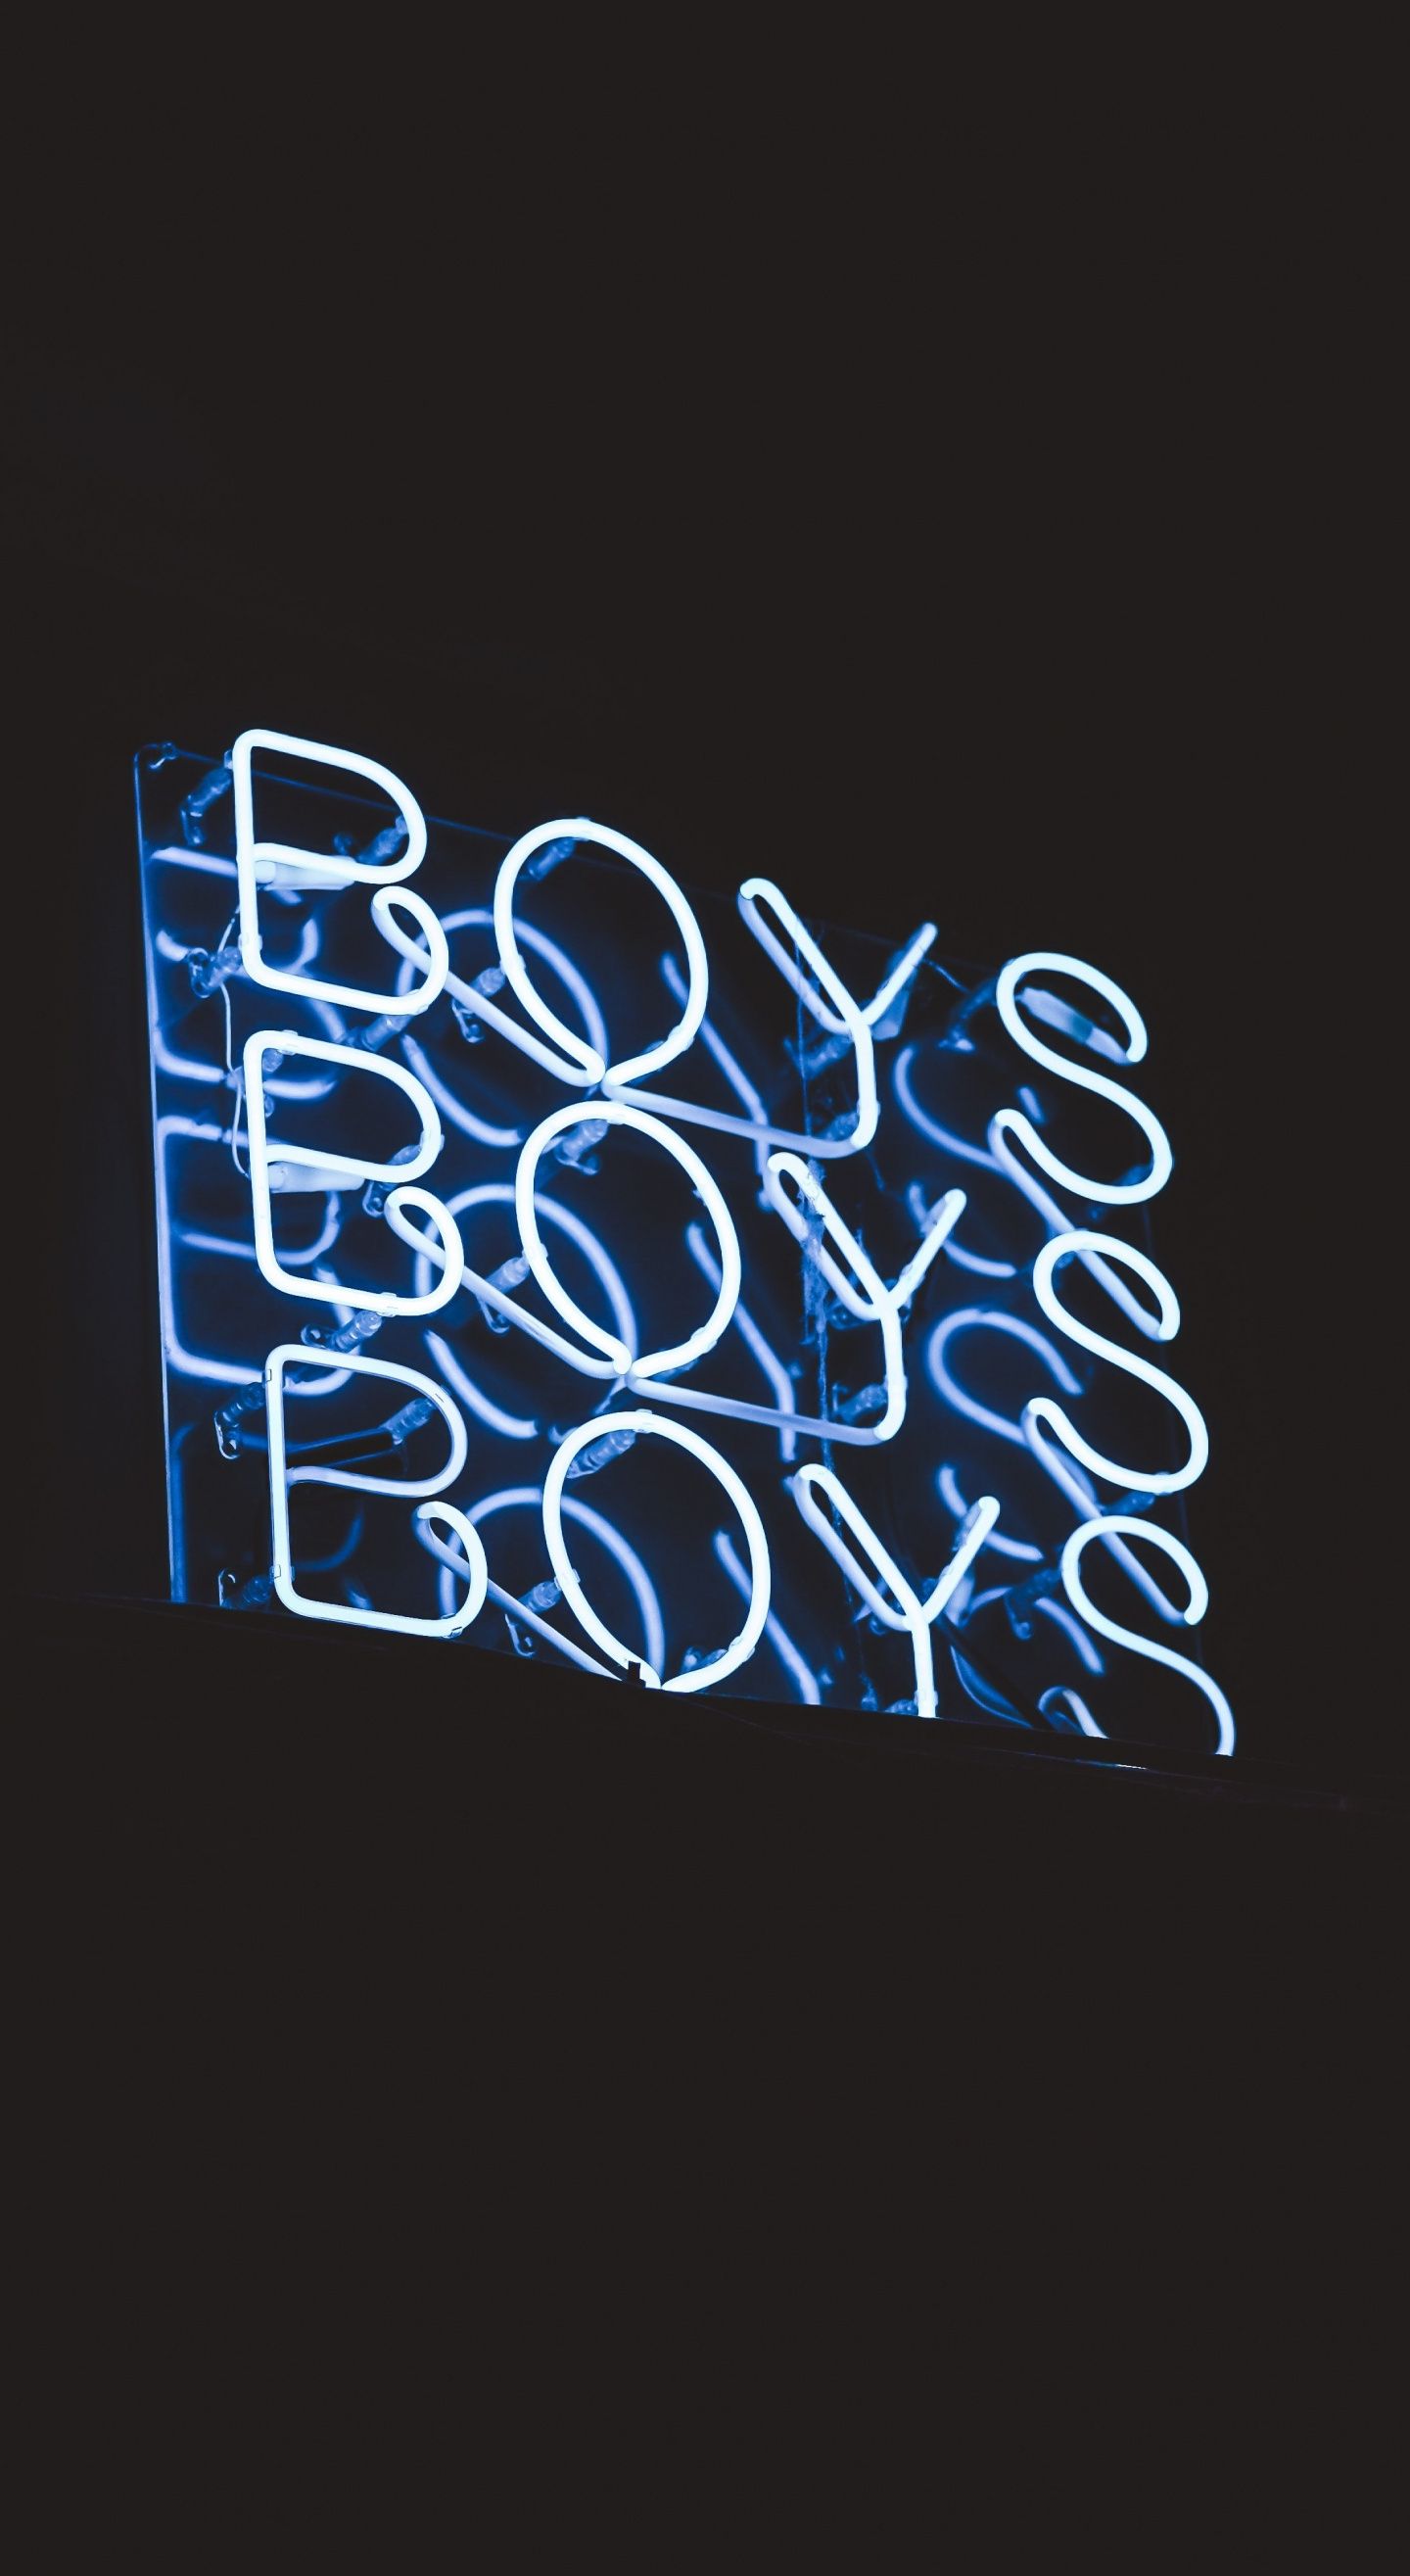 Boys Blue Inscription Dark Wallpaper